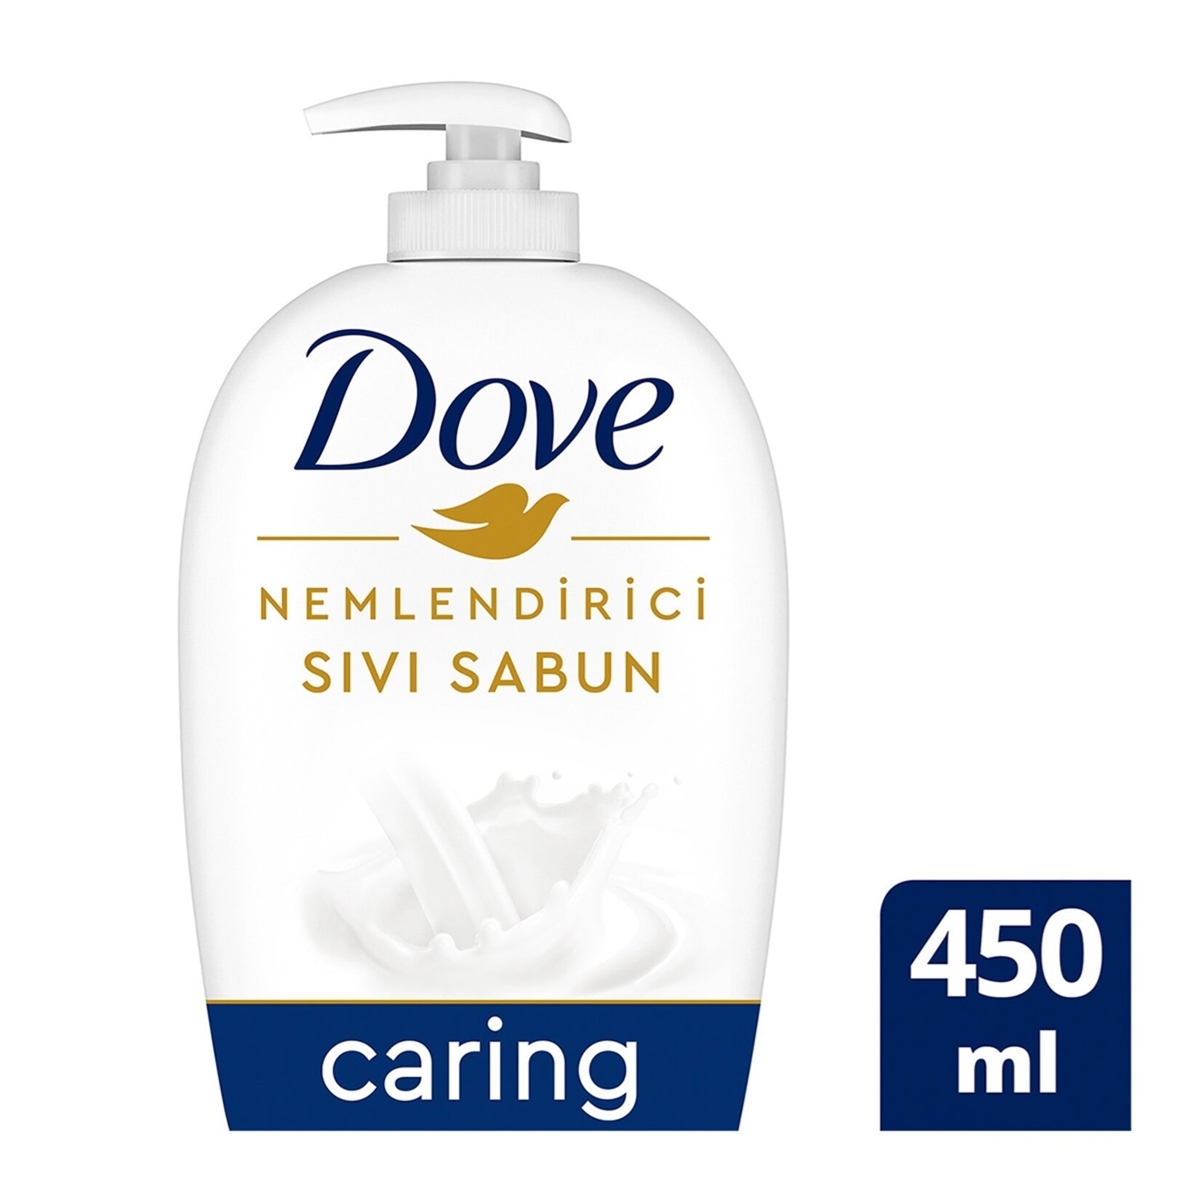 Dove Nemlendirici Sıvı Sabun Caring 1/4 Nemlendirici Krem Etkili 450 ml 12'li Koli resmi